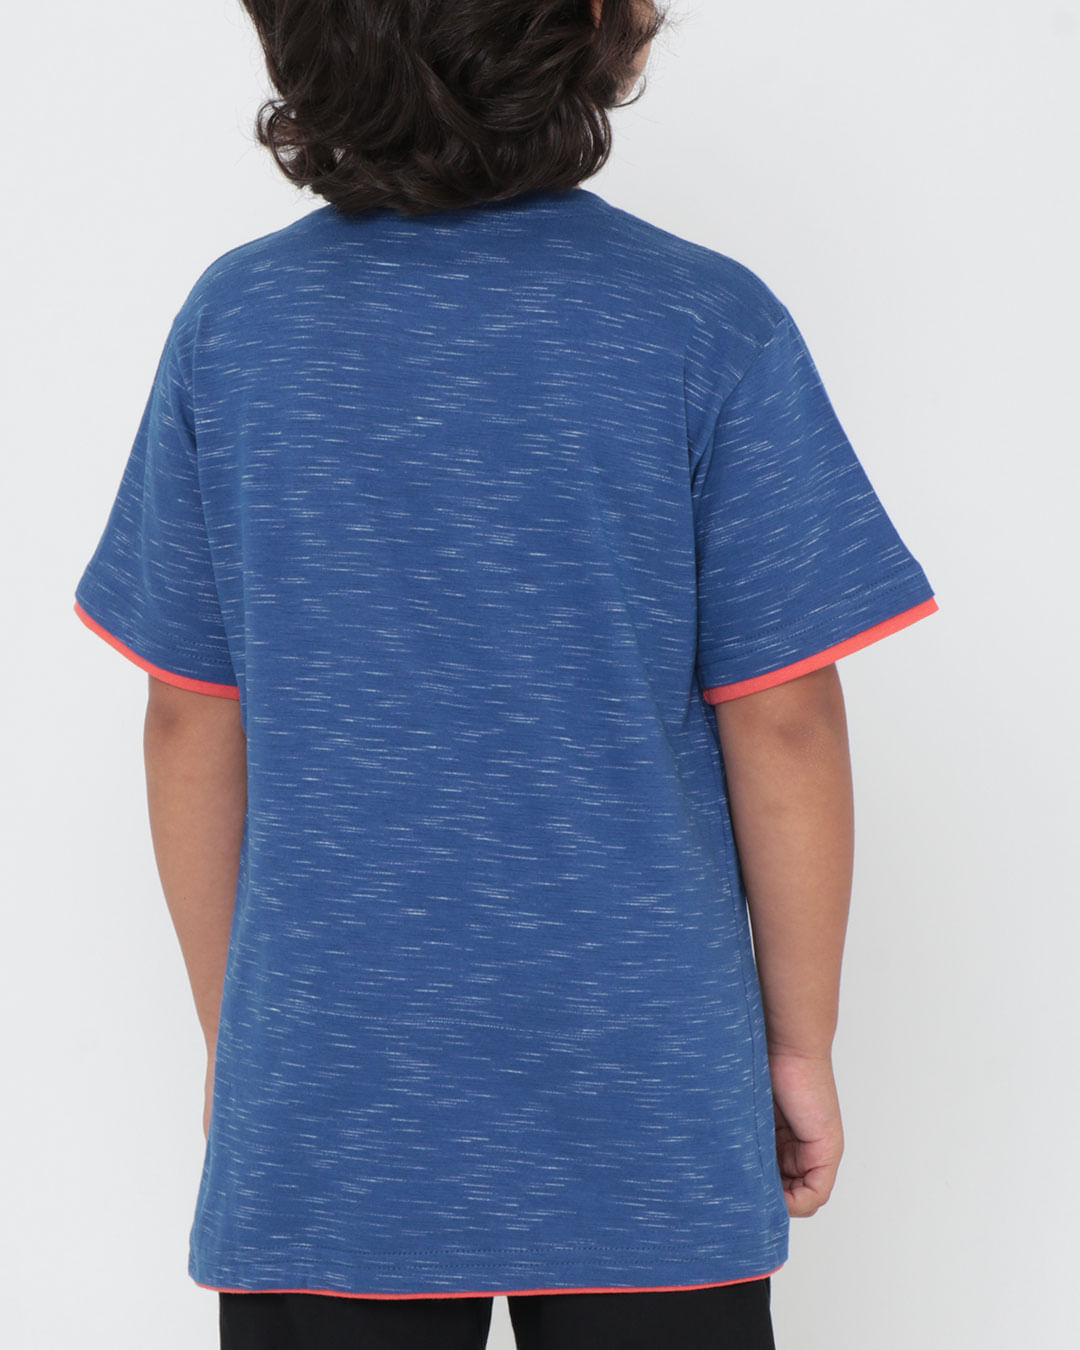 Camiseta-29773-Mc-M410-Tropi---Azul-Medio